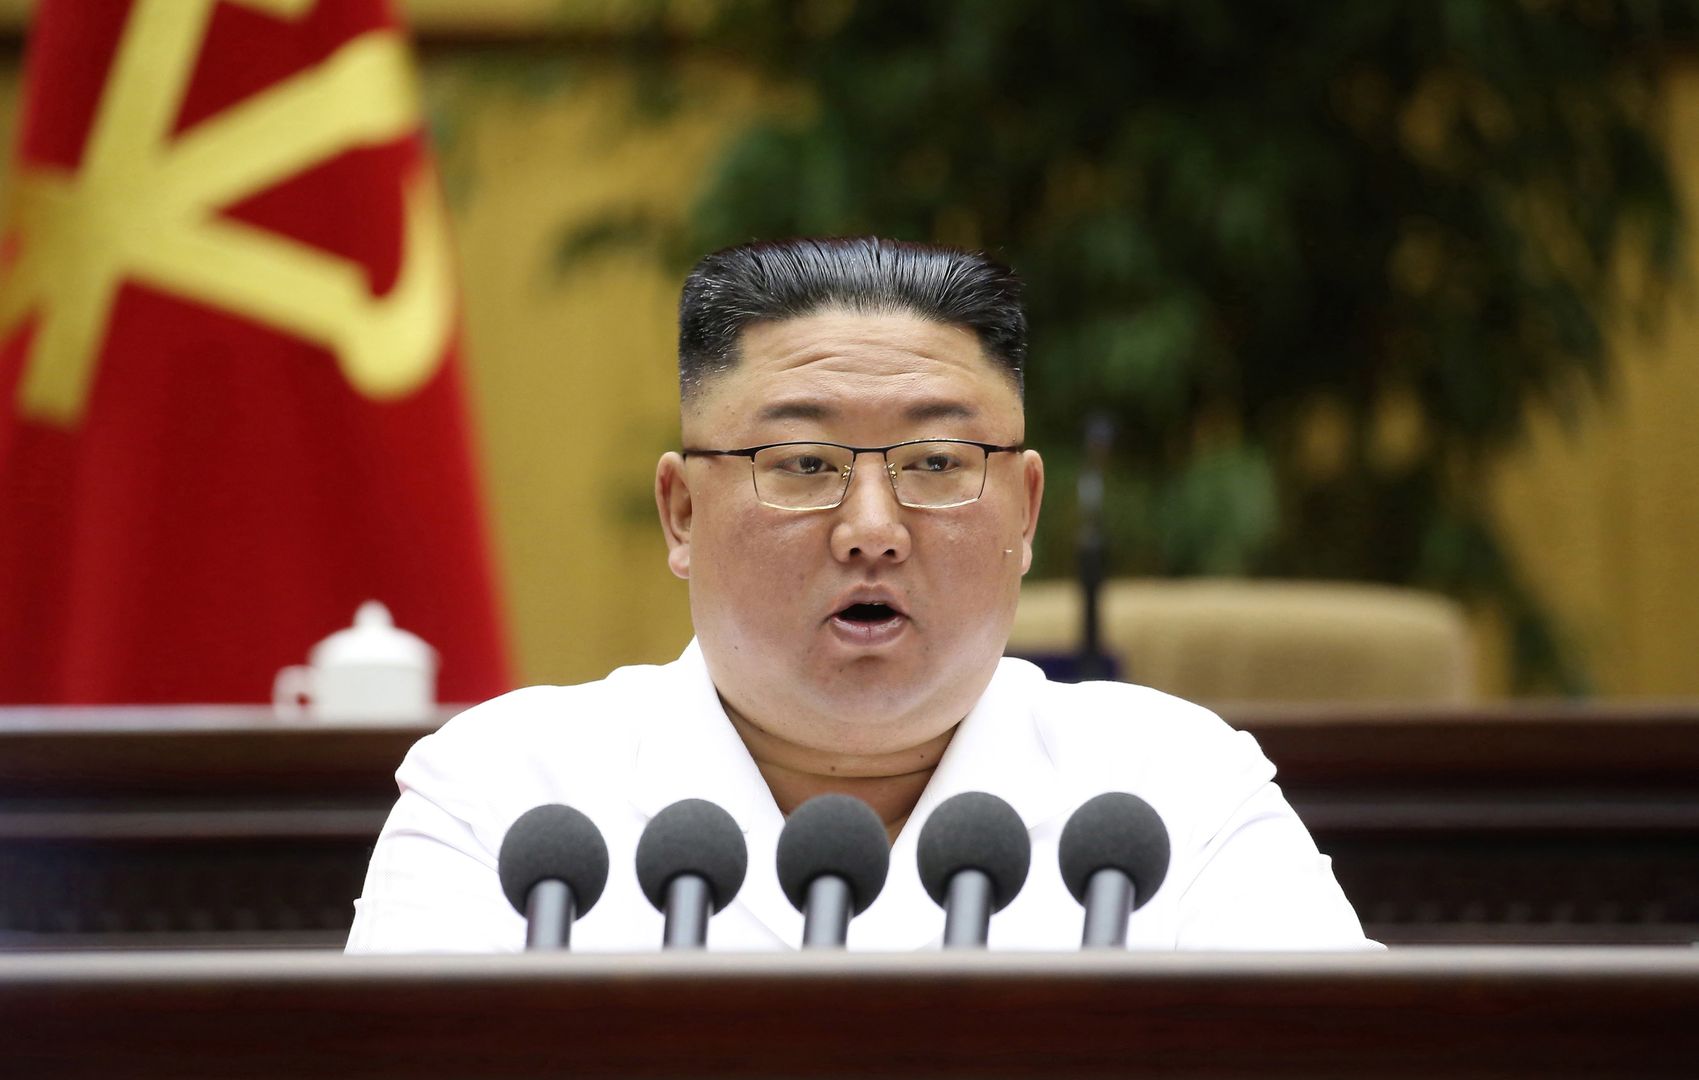 Mnóstwo plotek na temat Kim Dzong Una. Szybko zareagowali. "Zdrada państwa"